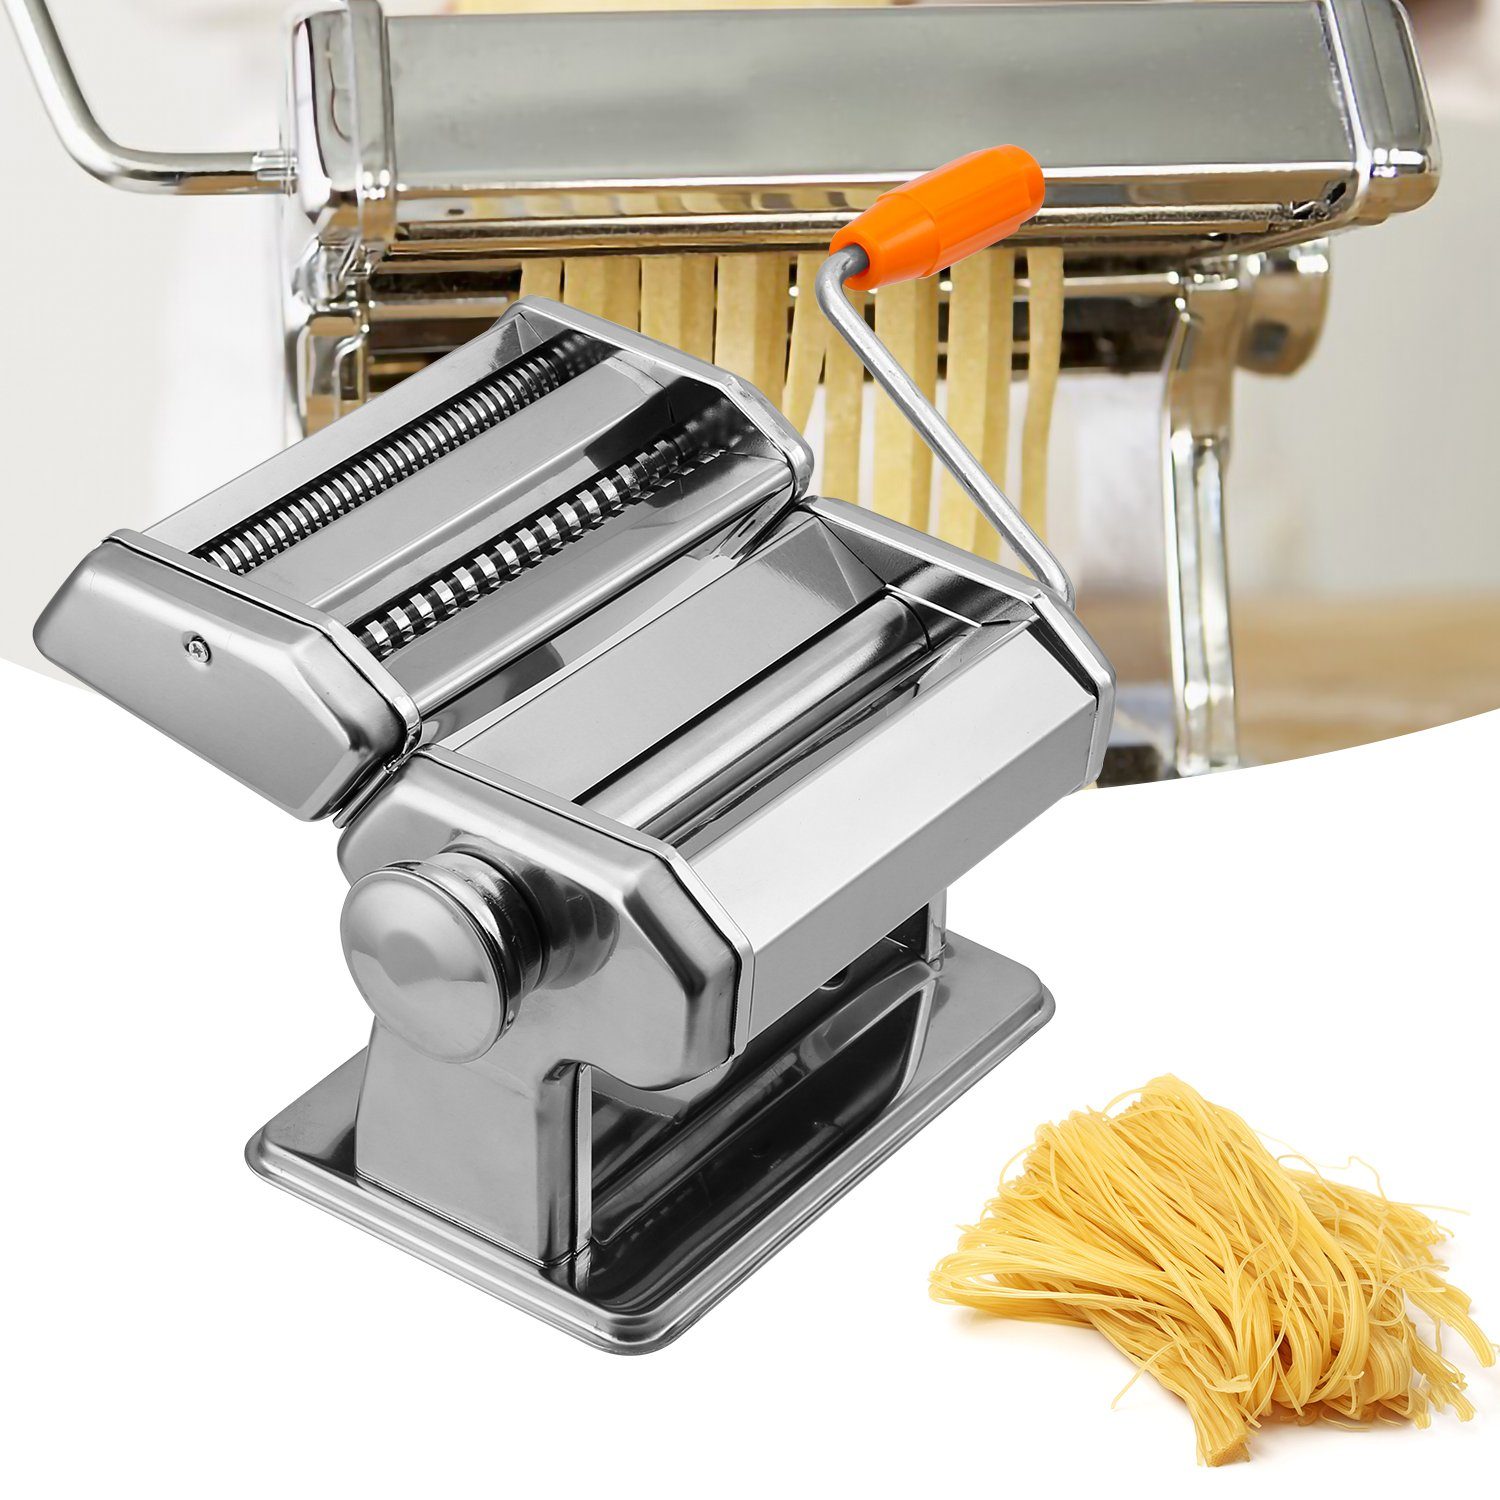 Gimisgu Nudelmaschine Edelstahl Pastamaschine Nudelaufsätze Pasta Maker Frische manuelle, Walze für Spaghetti Bandnudeln Lasagne Cannelloni